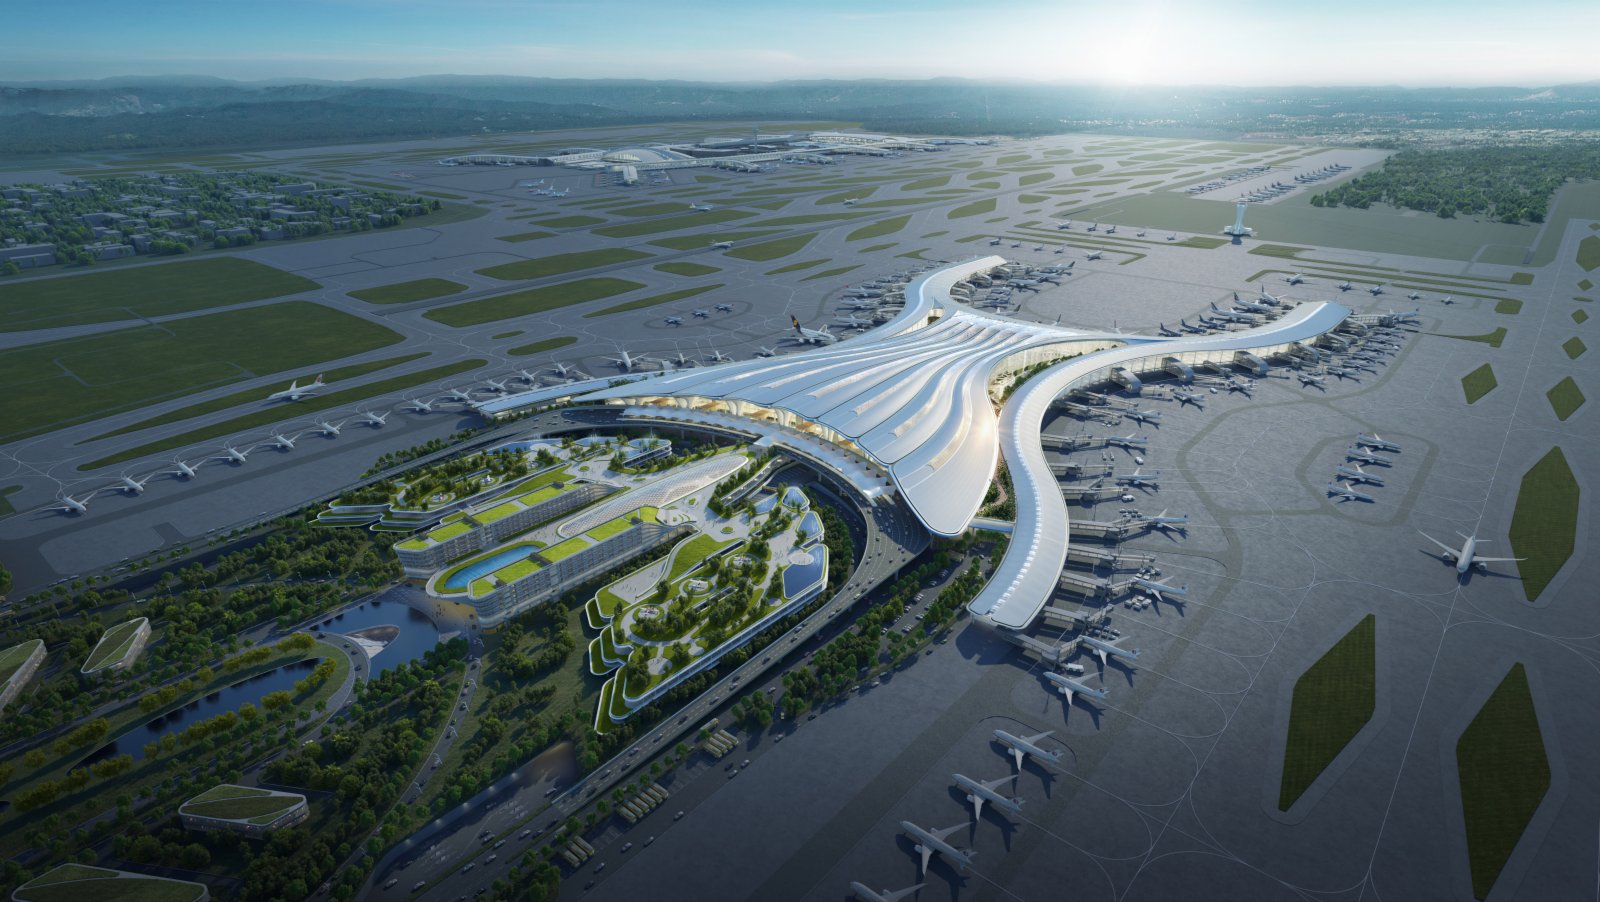  廣州白雲明年將成全球最大機場 規模與運量超過大興 